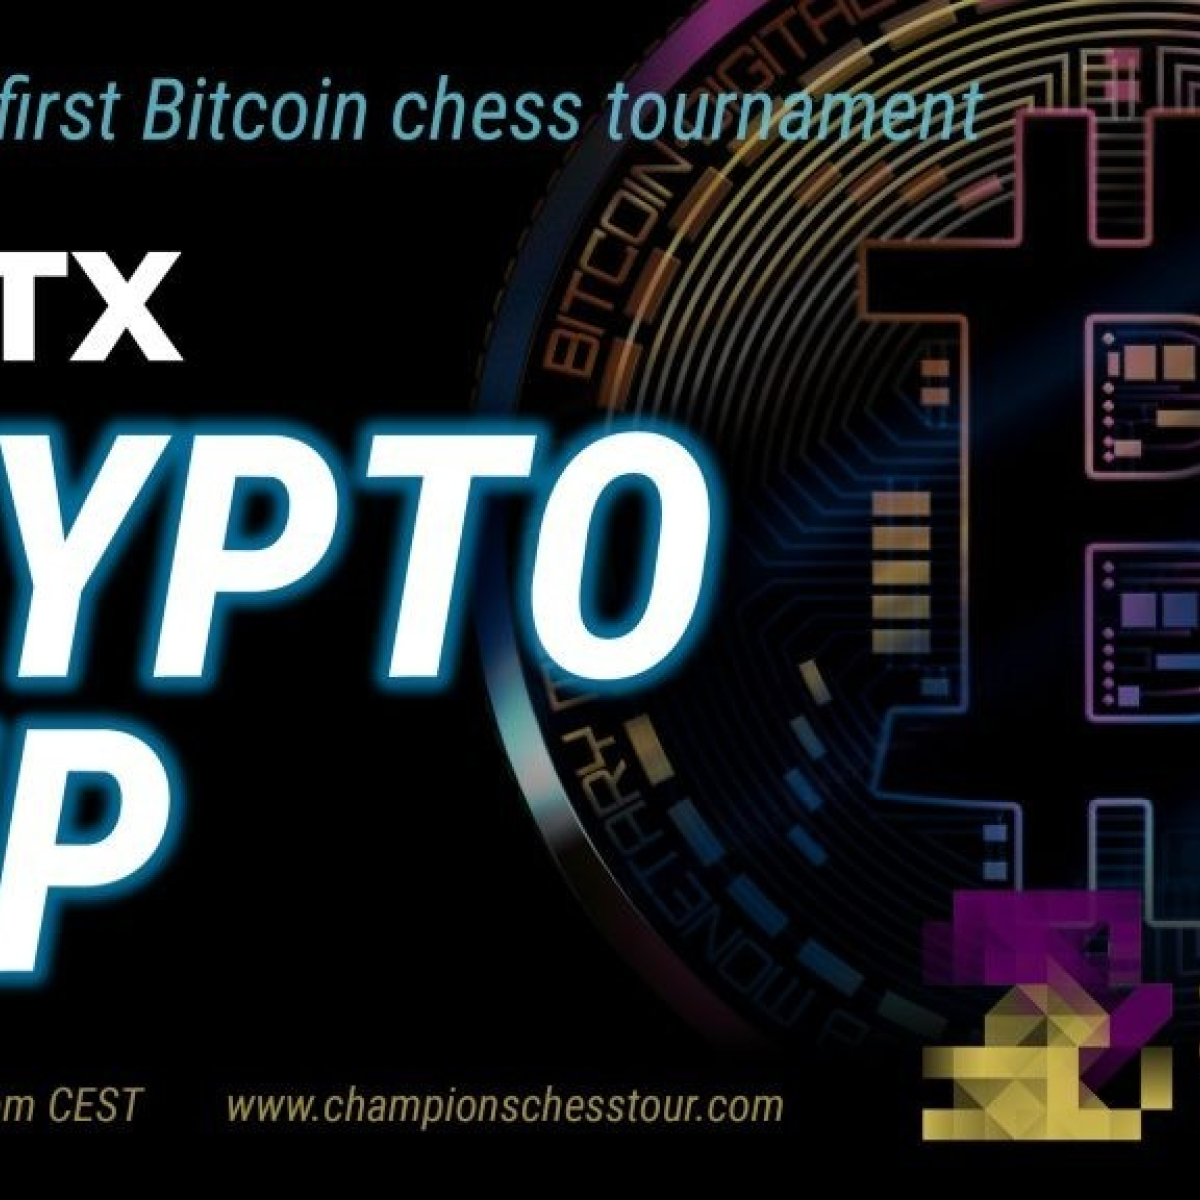 Carlsen-Nepo e Top 10 do mundo jogarão FTX Crypto Cup com $320.000 de  premiação total